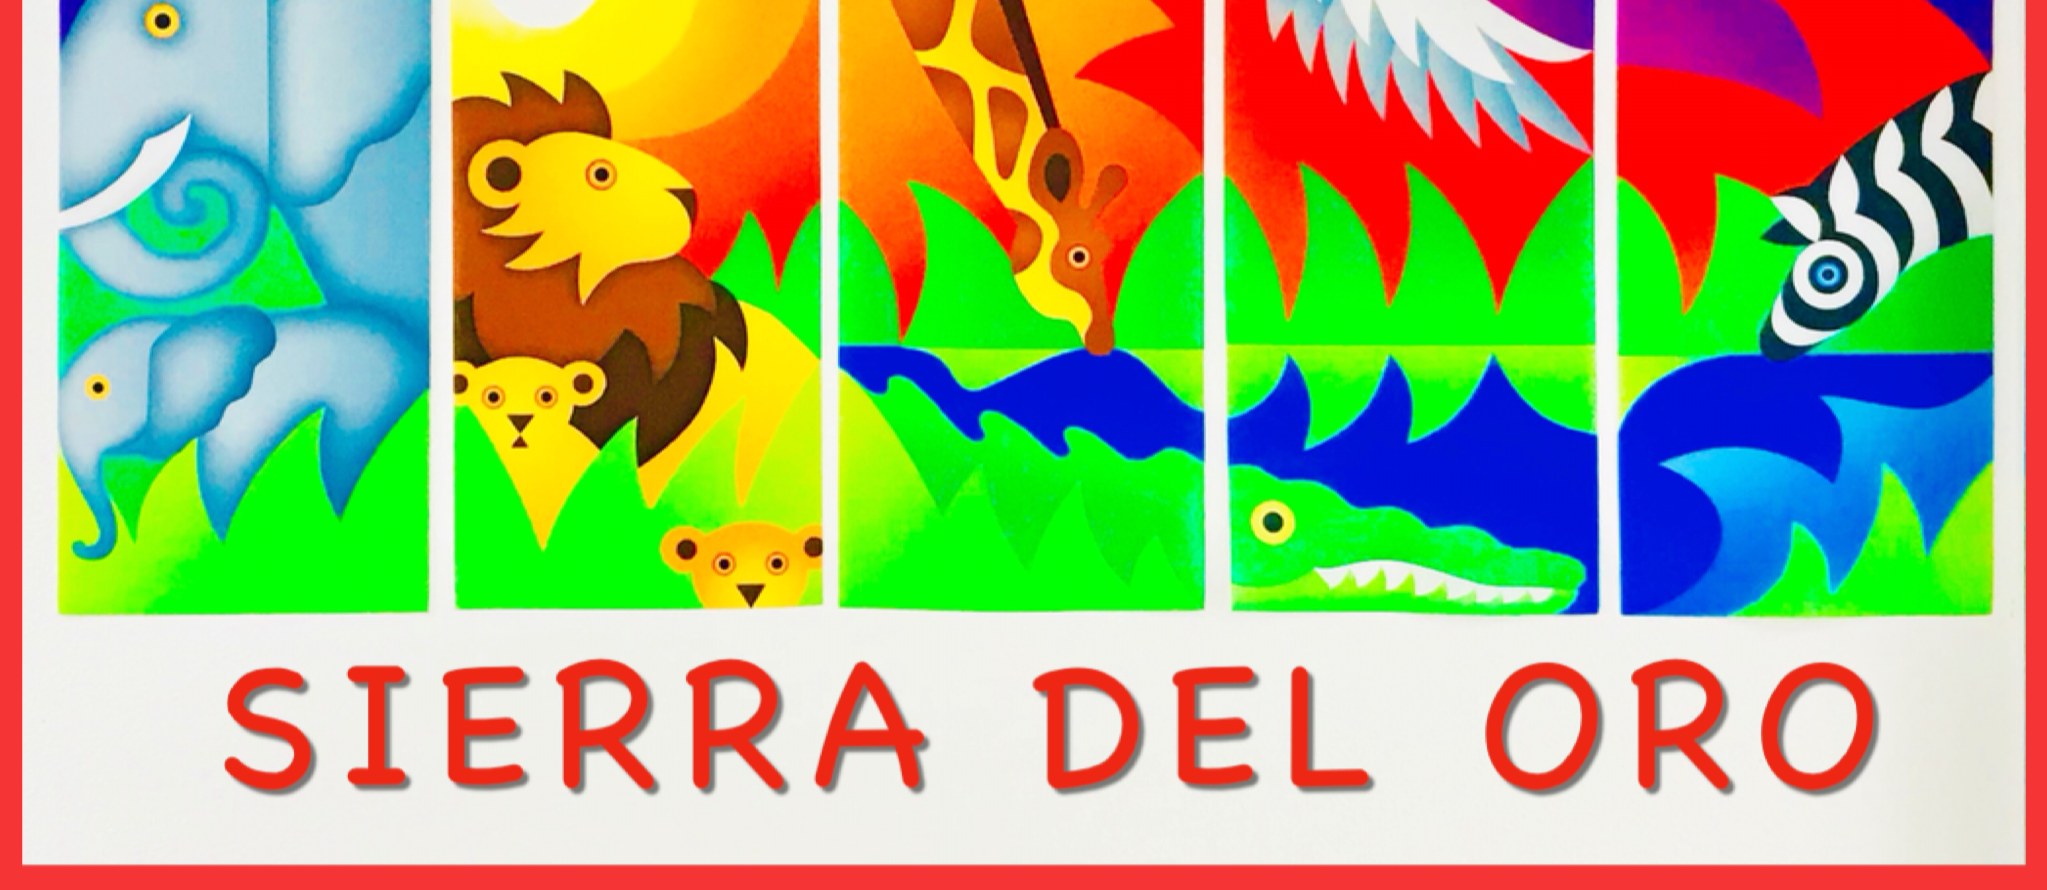 sierra del oro images of elephants, lions, giraffes, zebra, alligator 